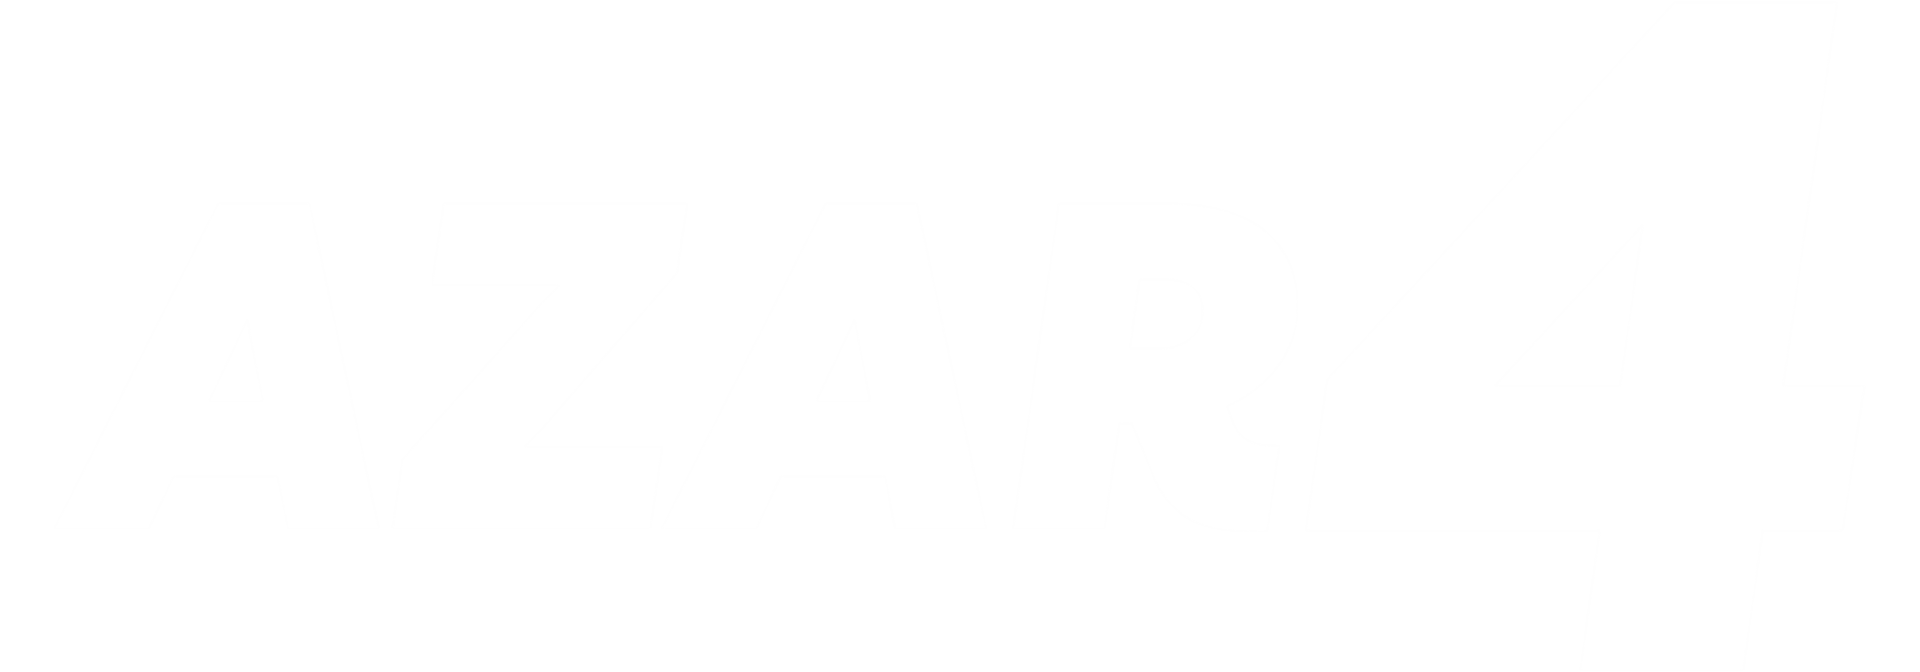 AZAR4 - azar background - azar4